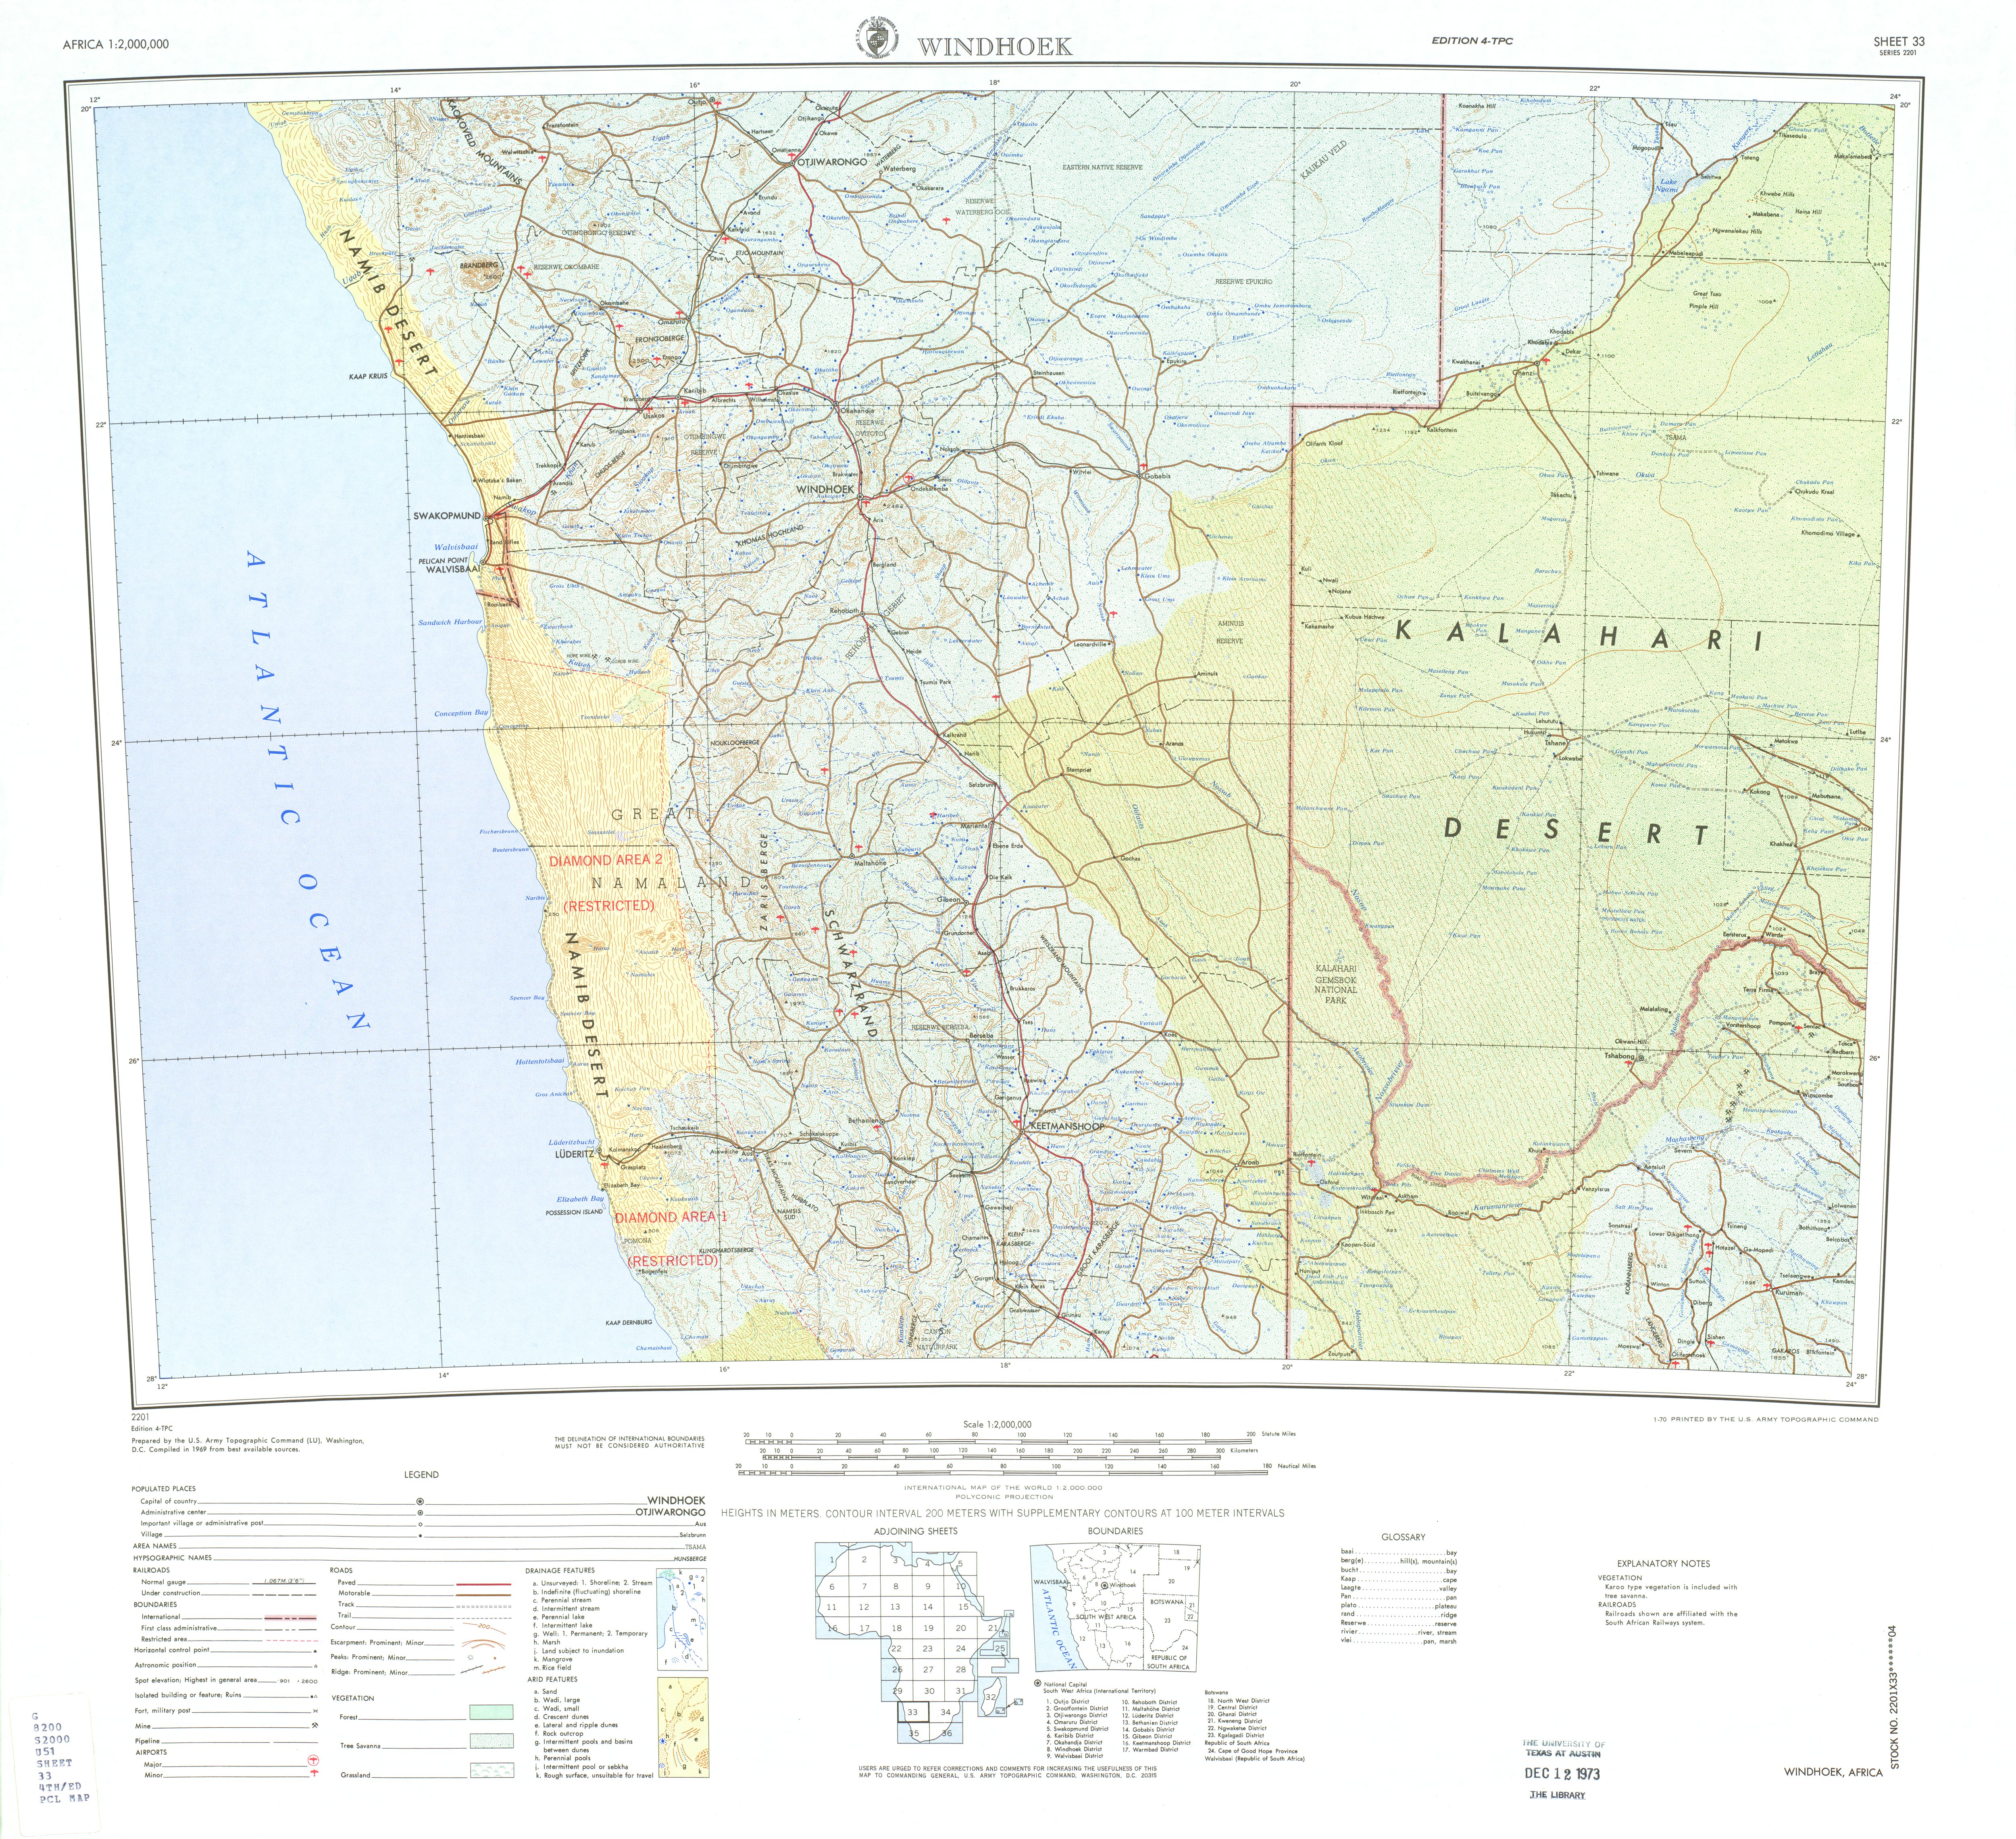 Hoja Windhoek del Mapa Topográfico de África 1969